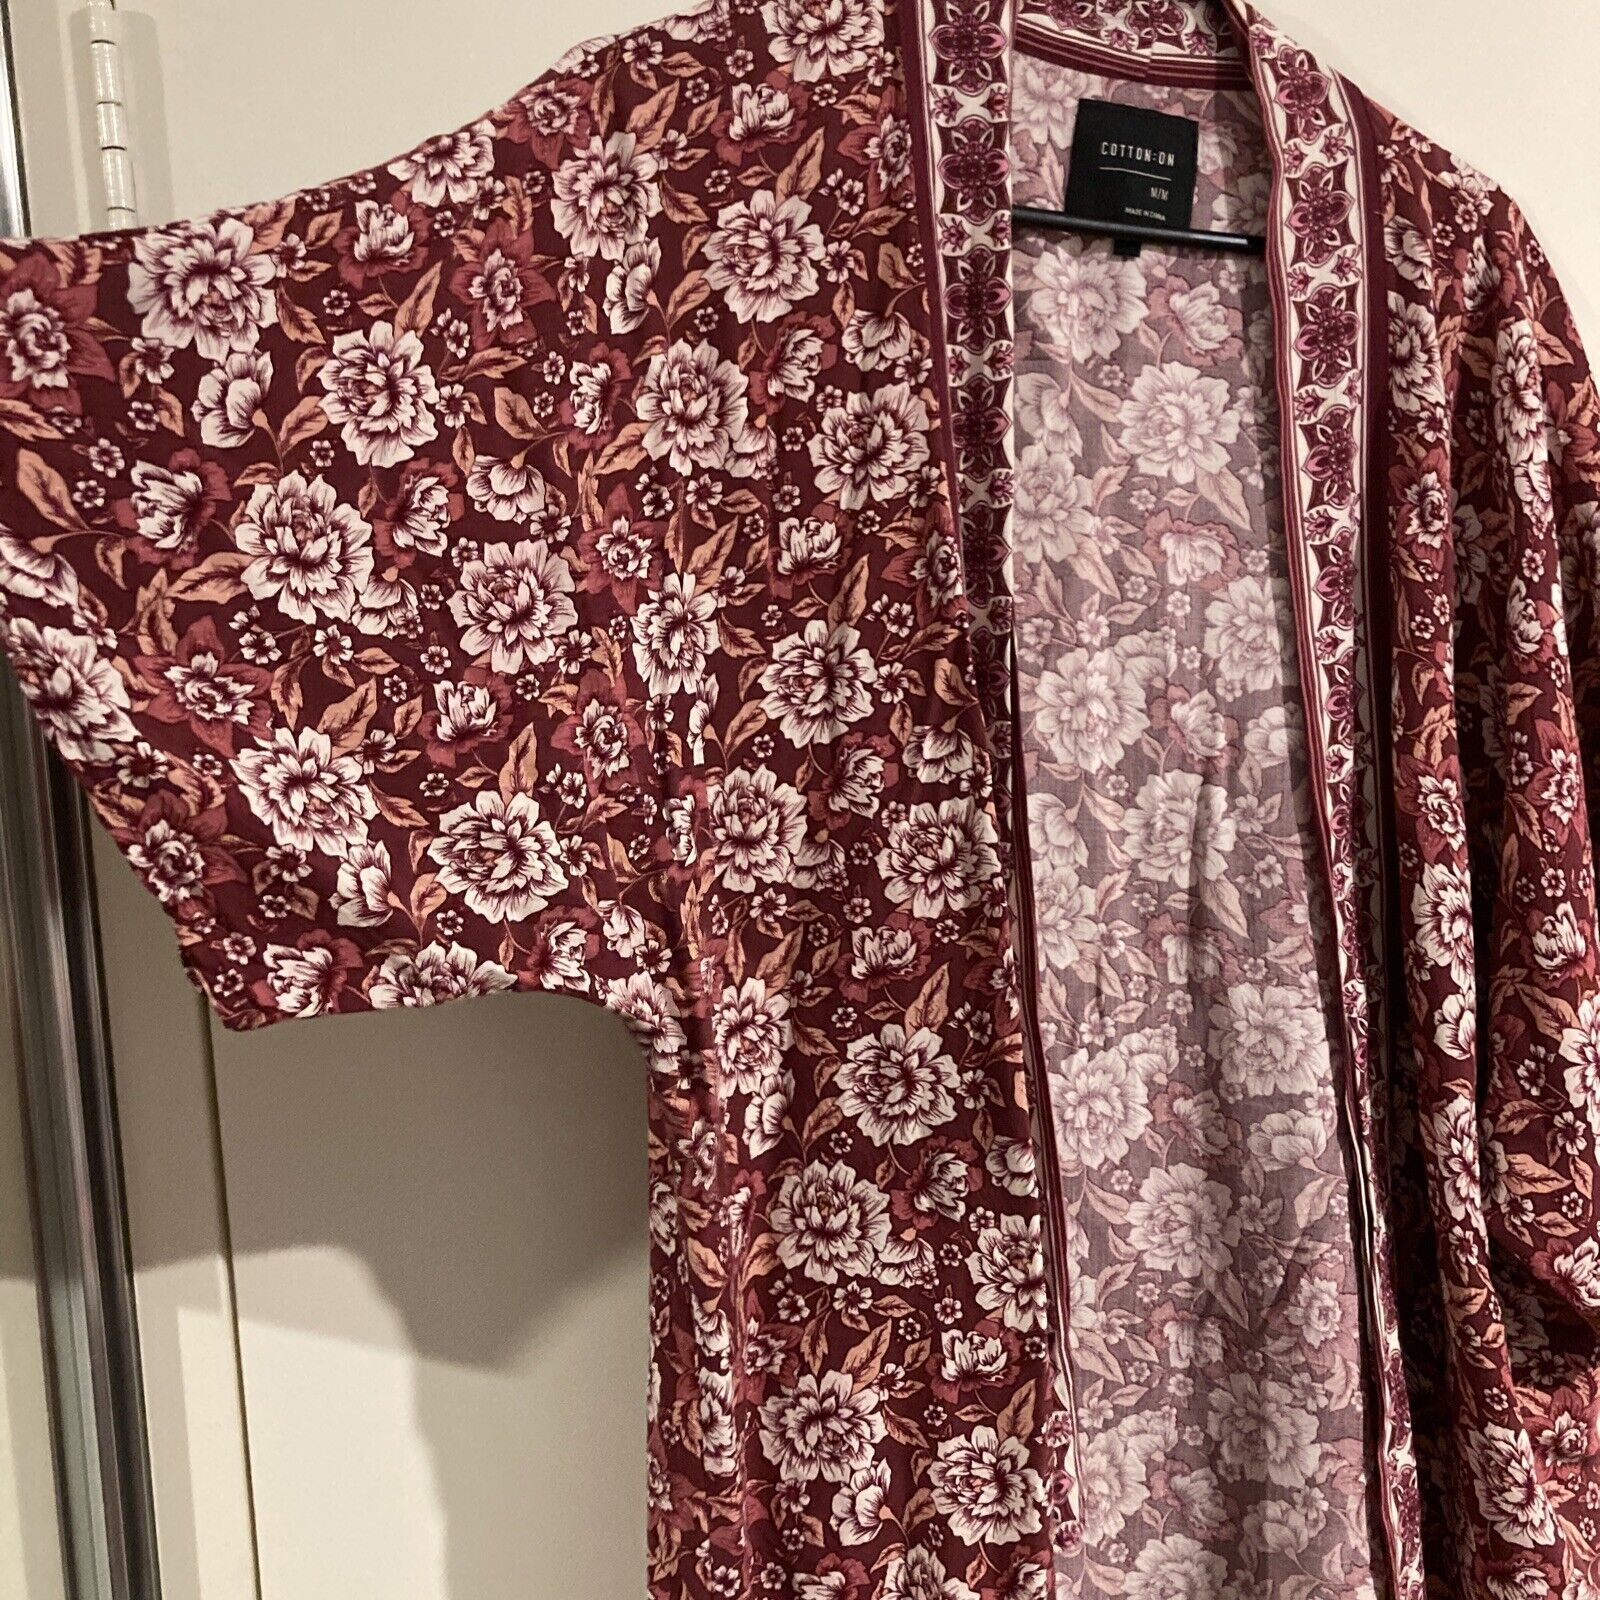 Cotton On Maroon White Floral Kimono Size M | eBay AU